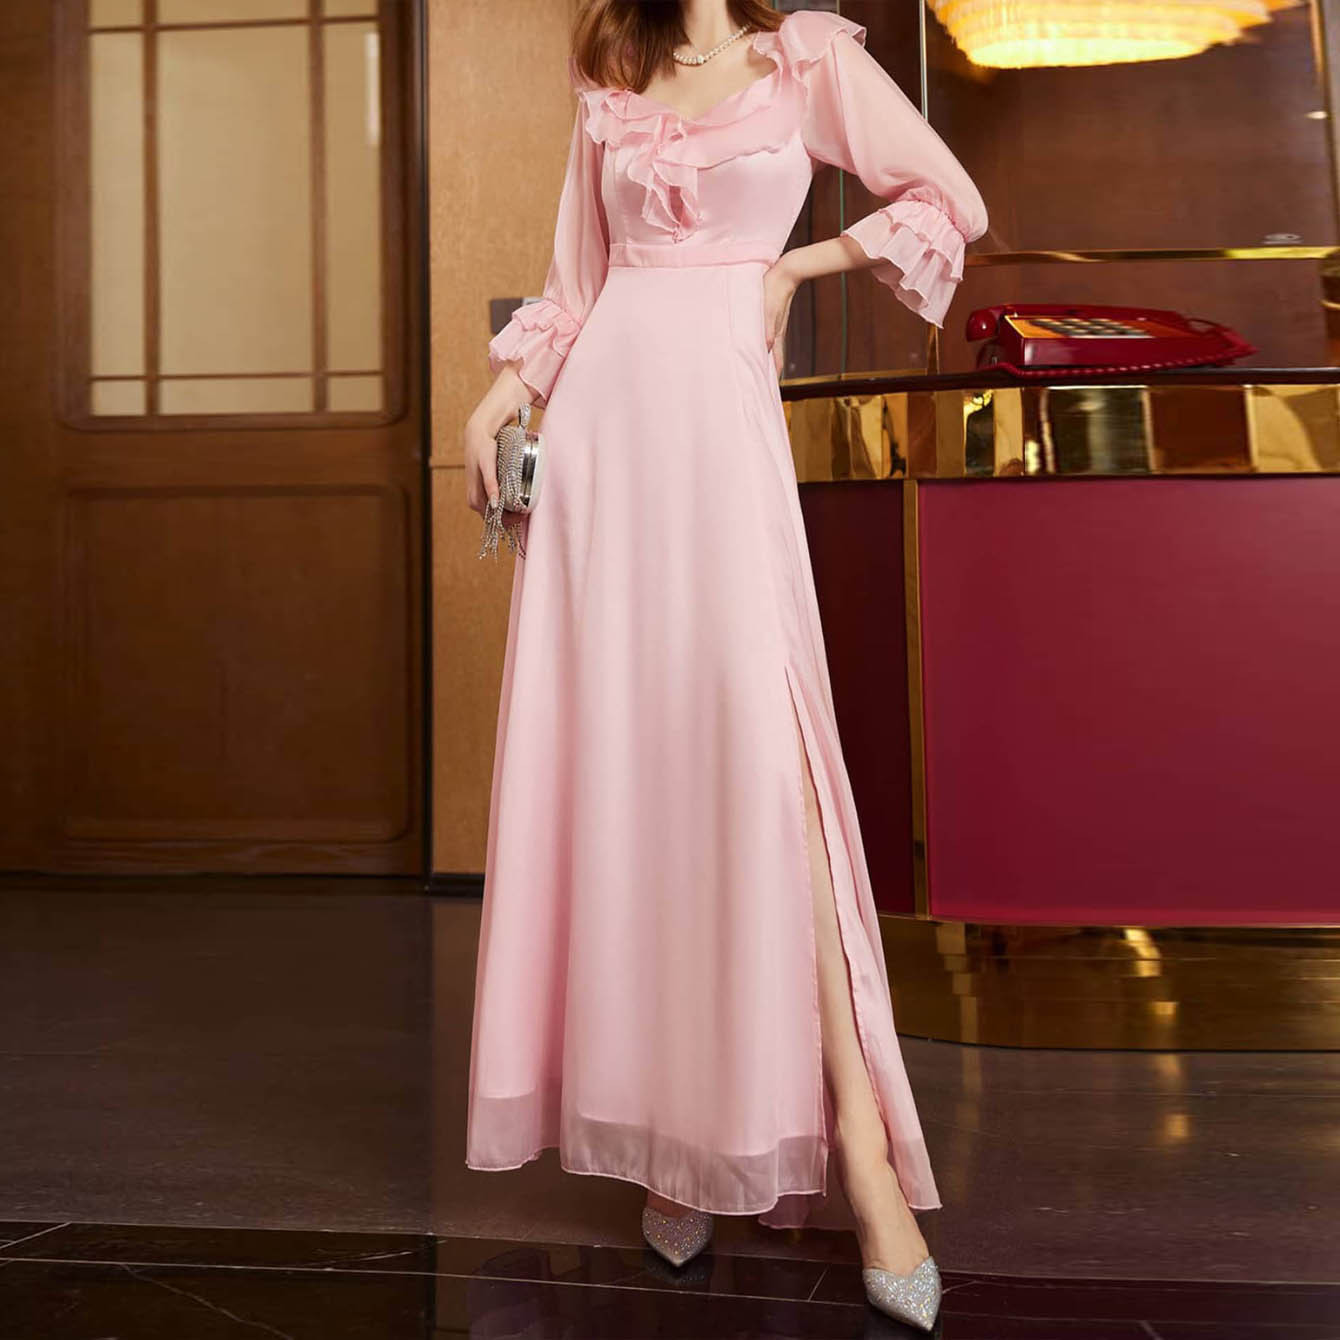 欧美外贸新款女装连衣裙 亚马逊性感中袖粉色长裙聚会派对礼服裙